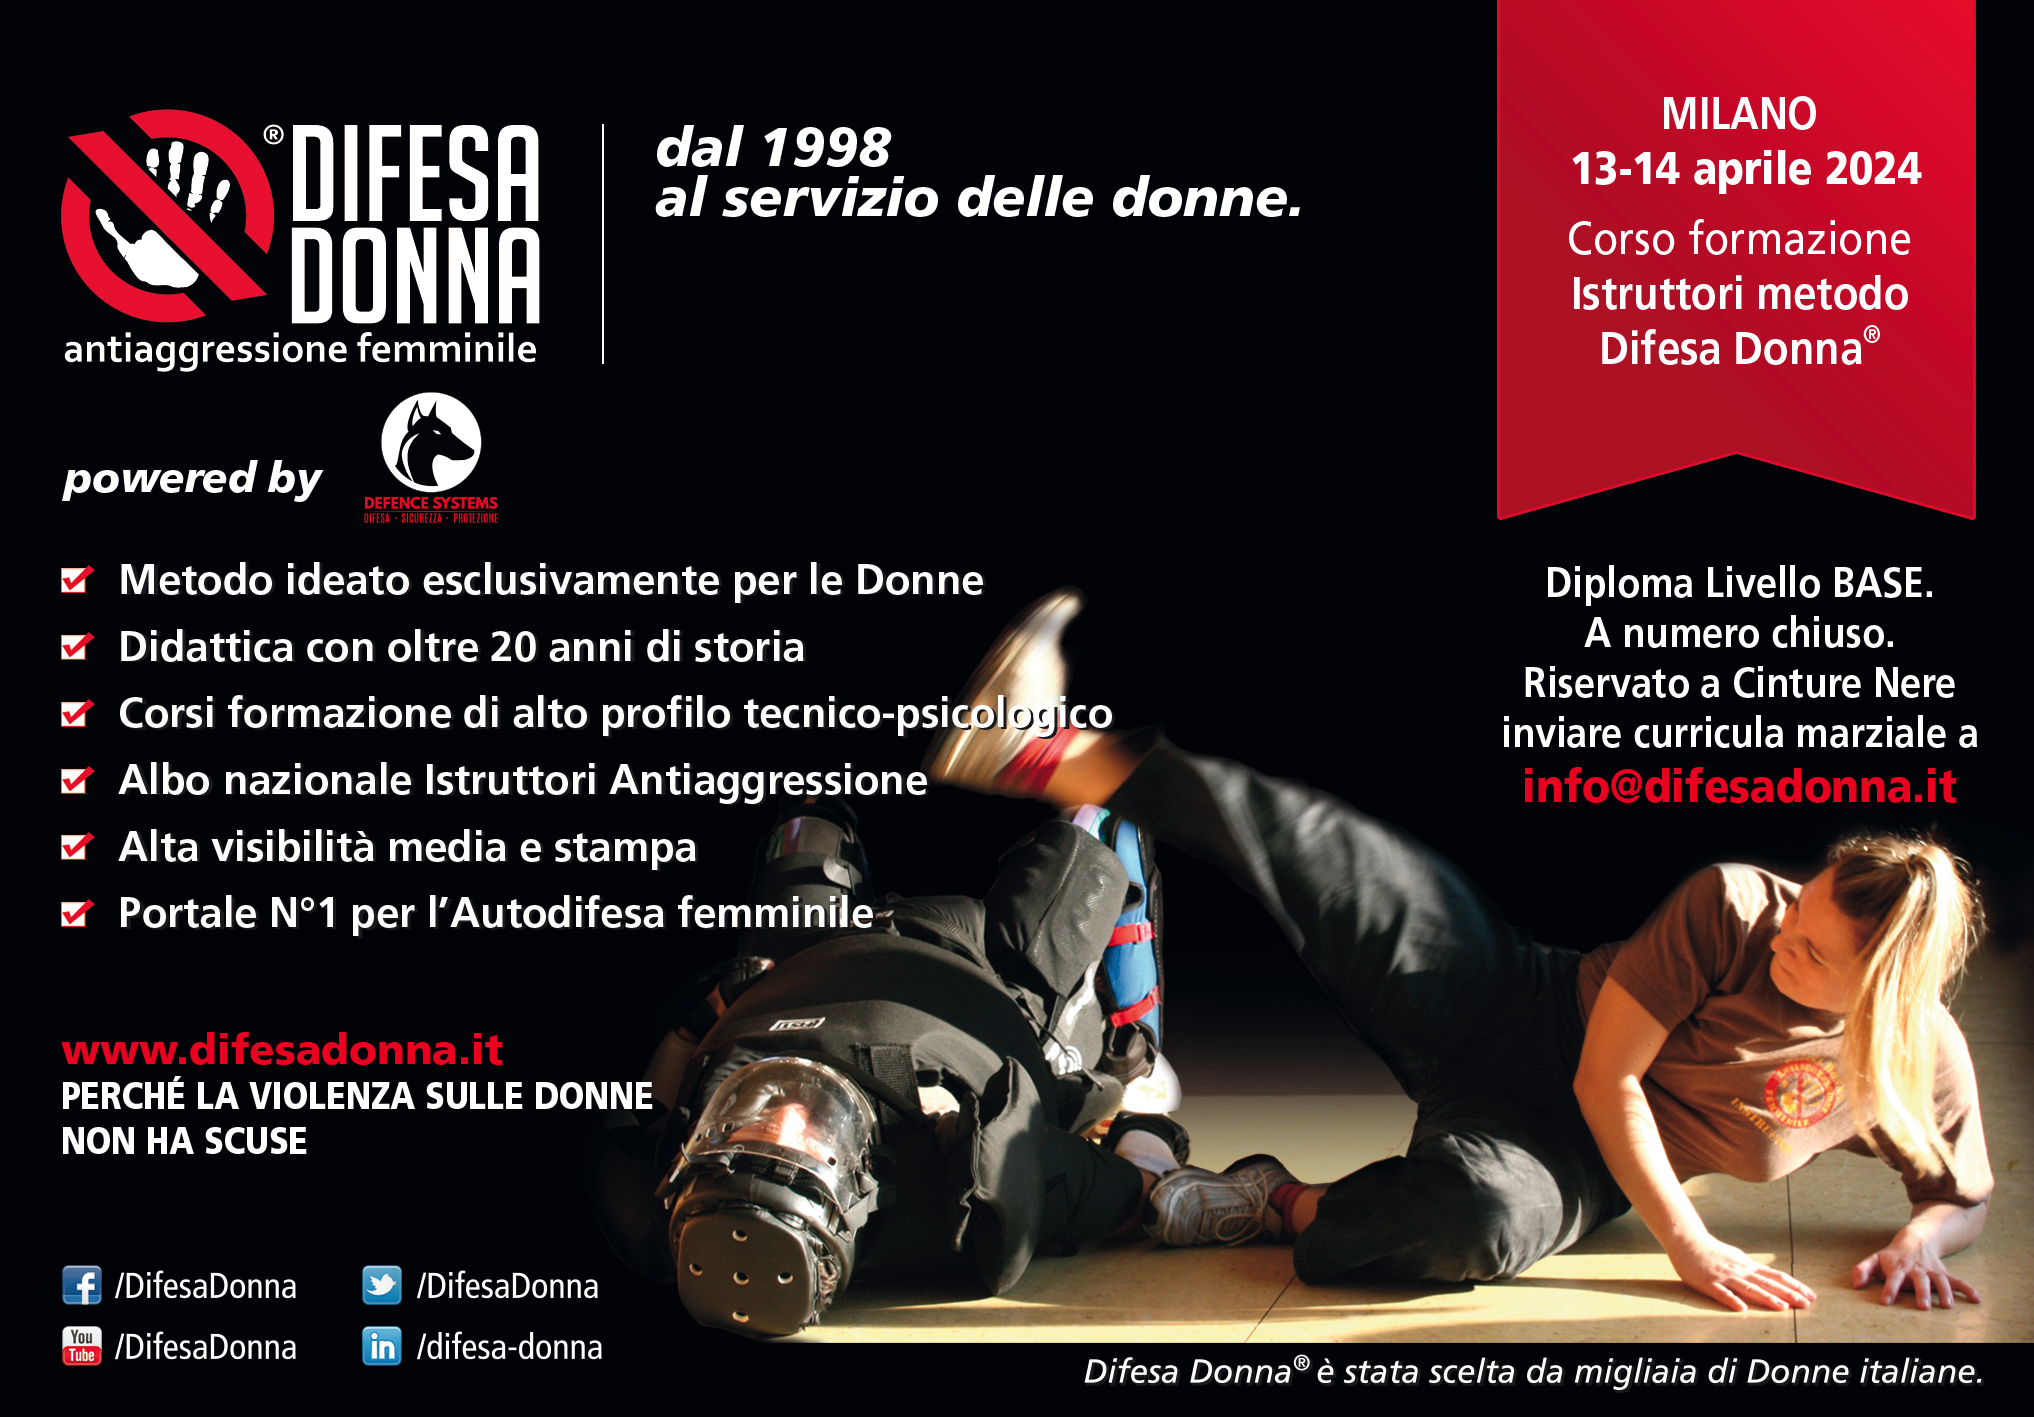 Coso-Istruttori-Difesa-Donna-Milano-febbraio2020